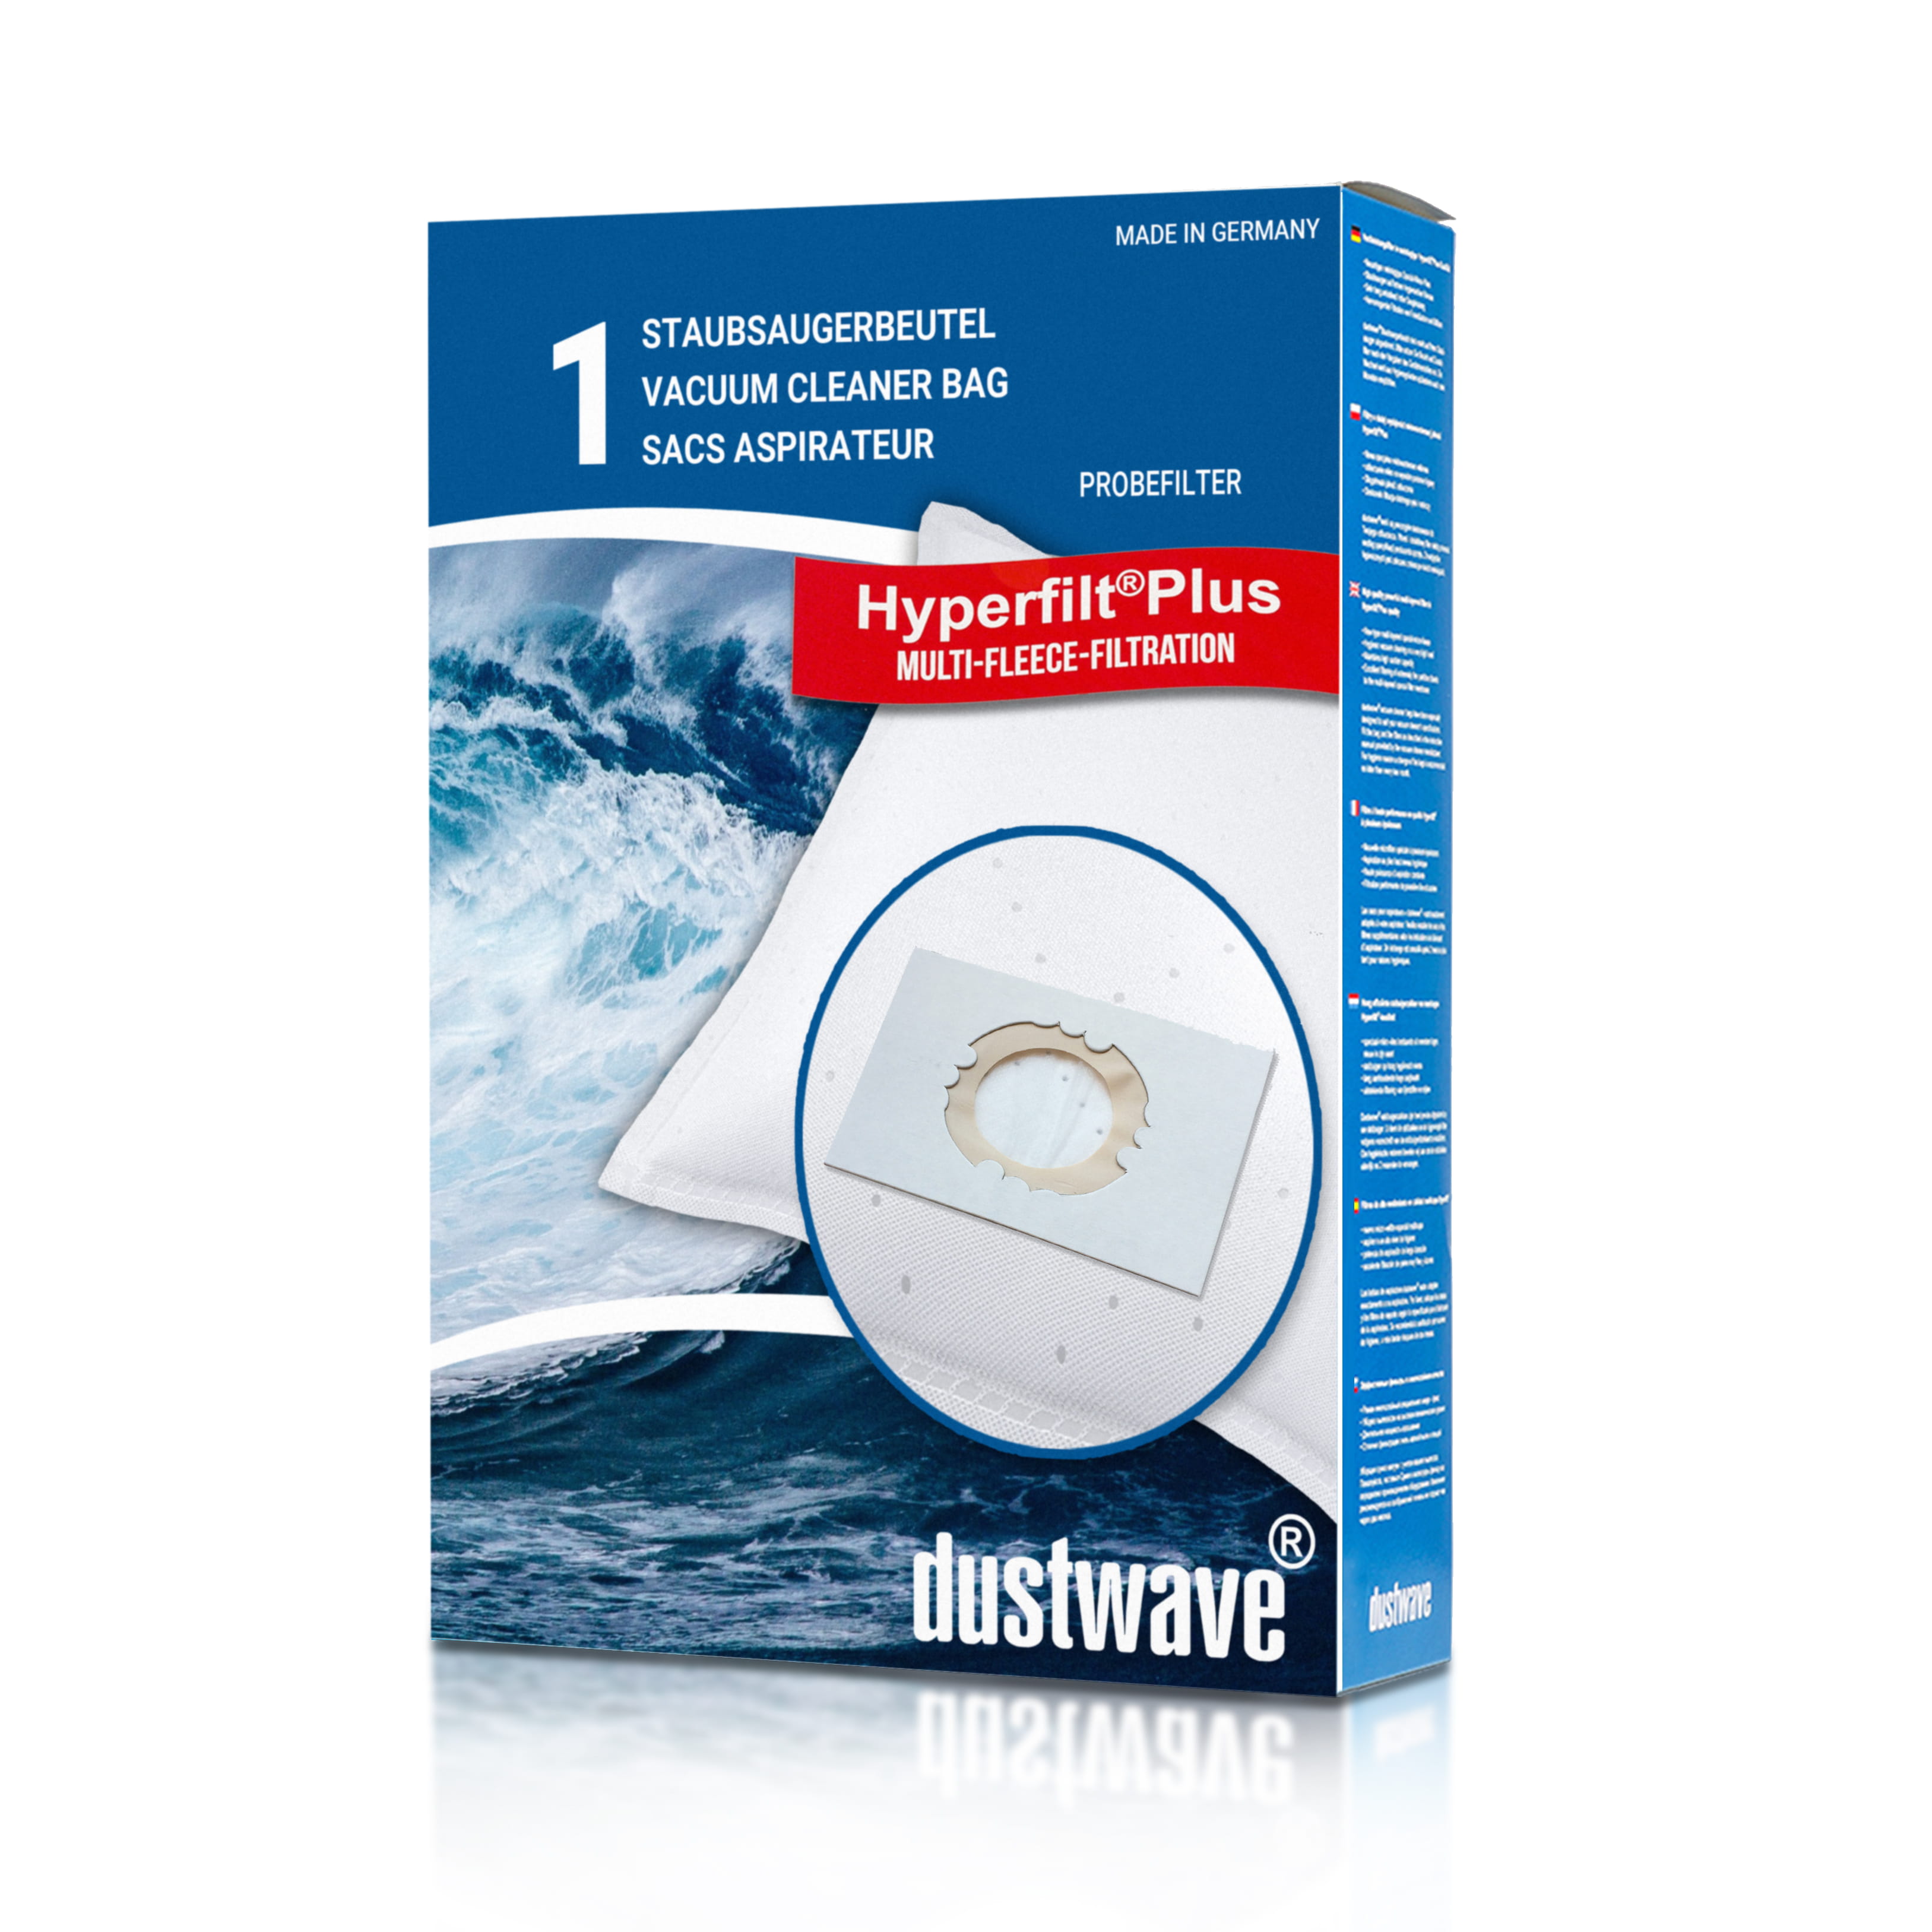 Dustwave® 1 Staubsaugerbeutel für Alaska WVC 1600 - hocheffizient mit Hygieneverschluss - Made in Germany